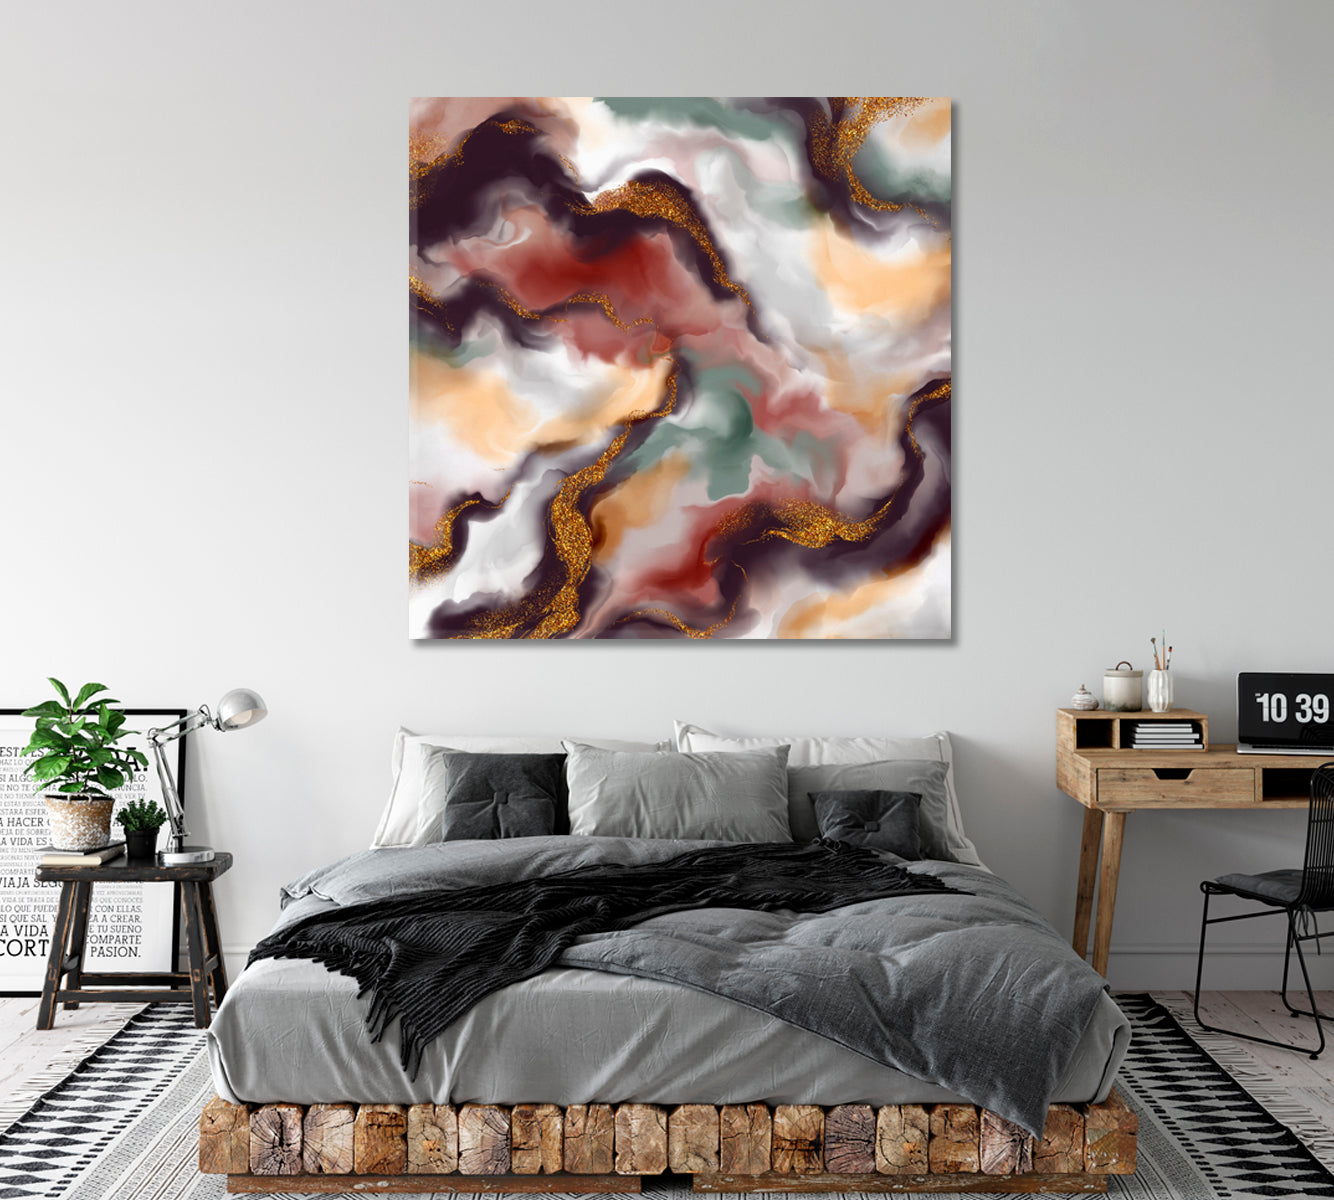 Multicolor Marble Abstract Splash Canvas Print ArtLexy   